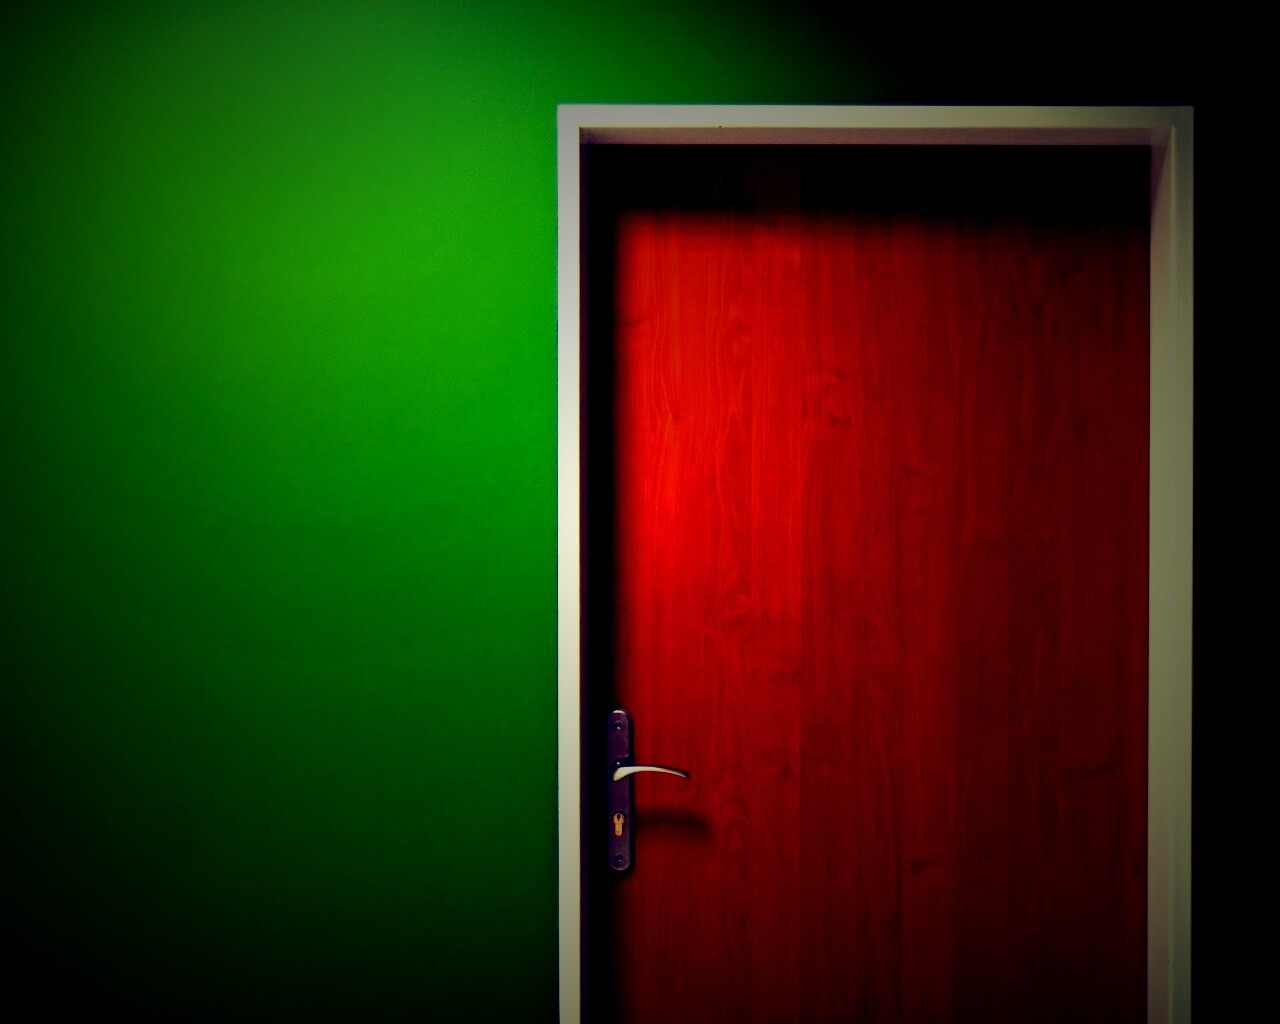 Дверь в стене обои